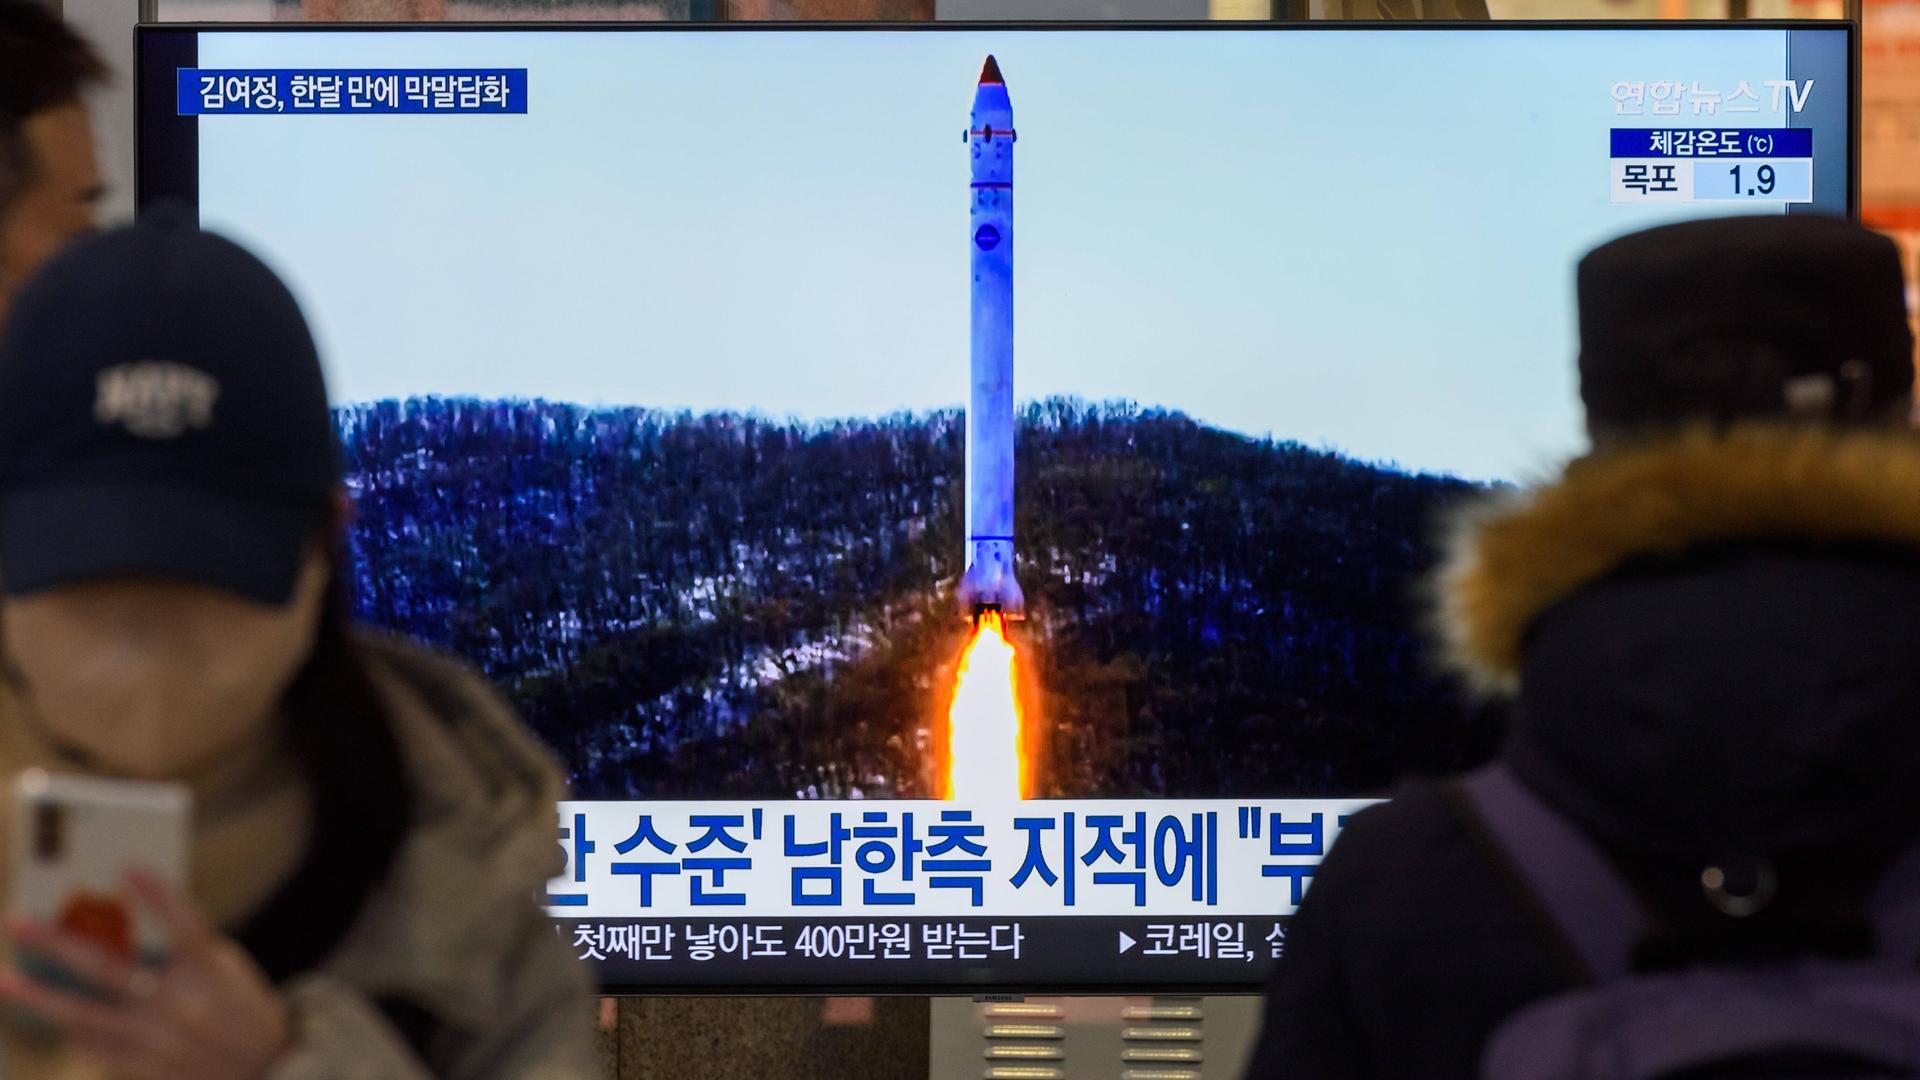 Ein Fernsehbildschirm zeigt das Bild einer nordkoreanischen Rakete mit Testsatelliten während einer südkoreanischen Nachrichtensendung.